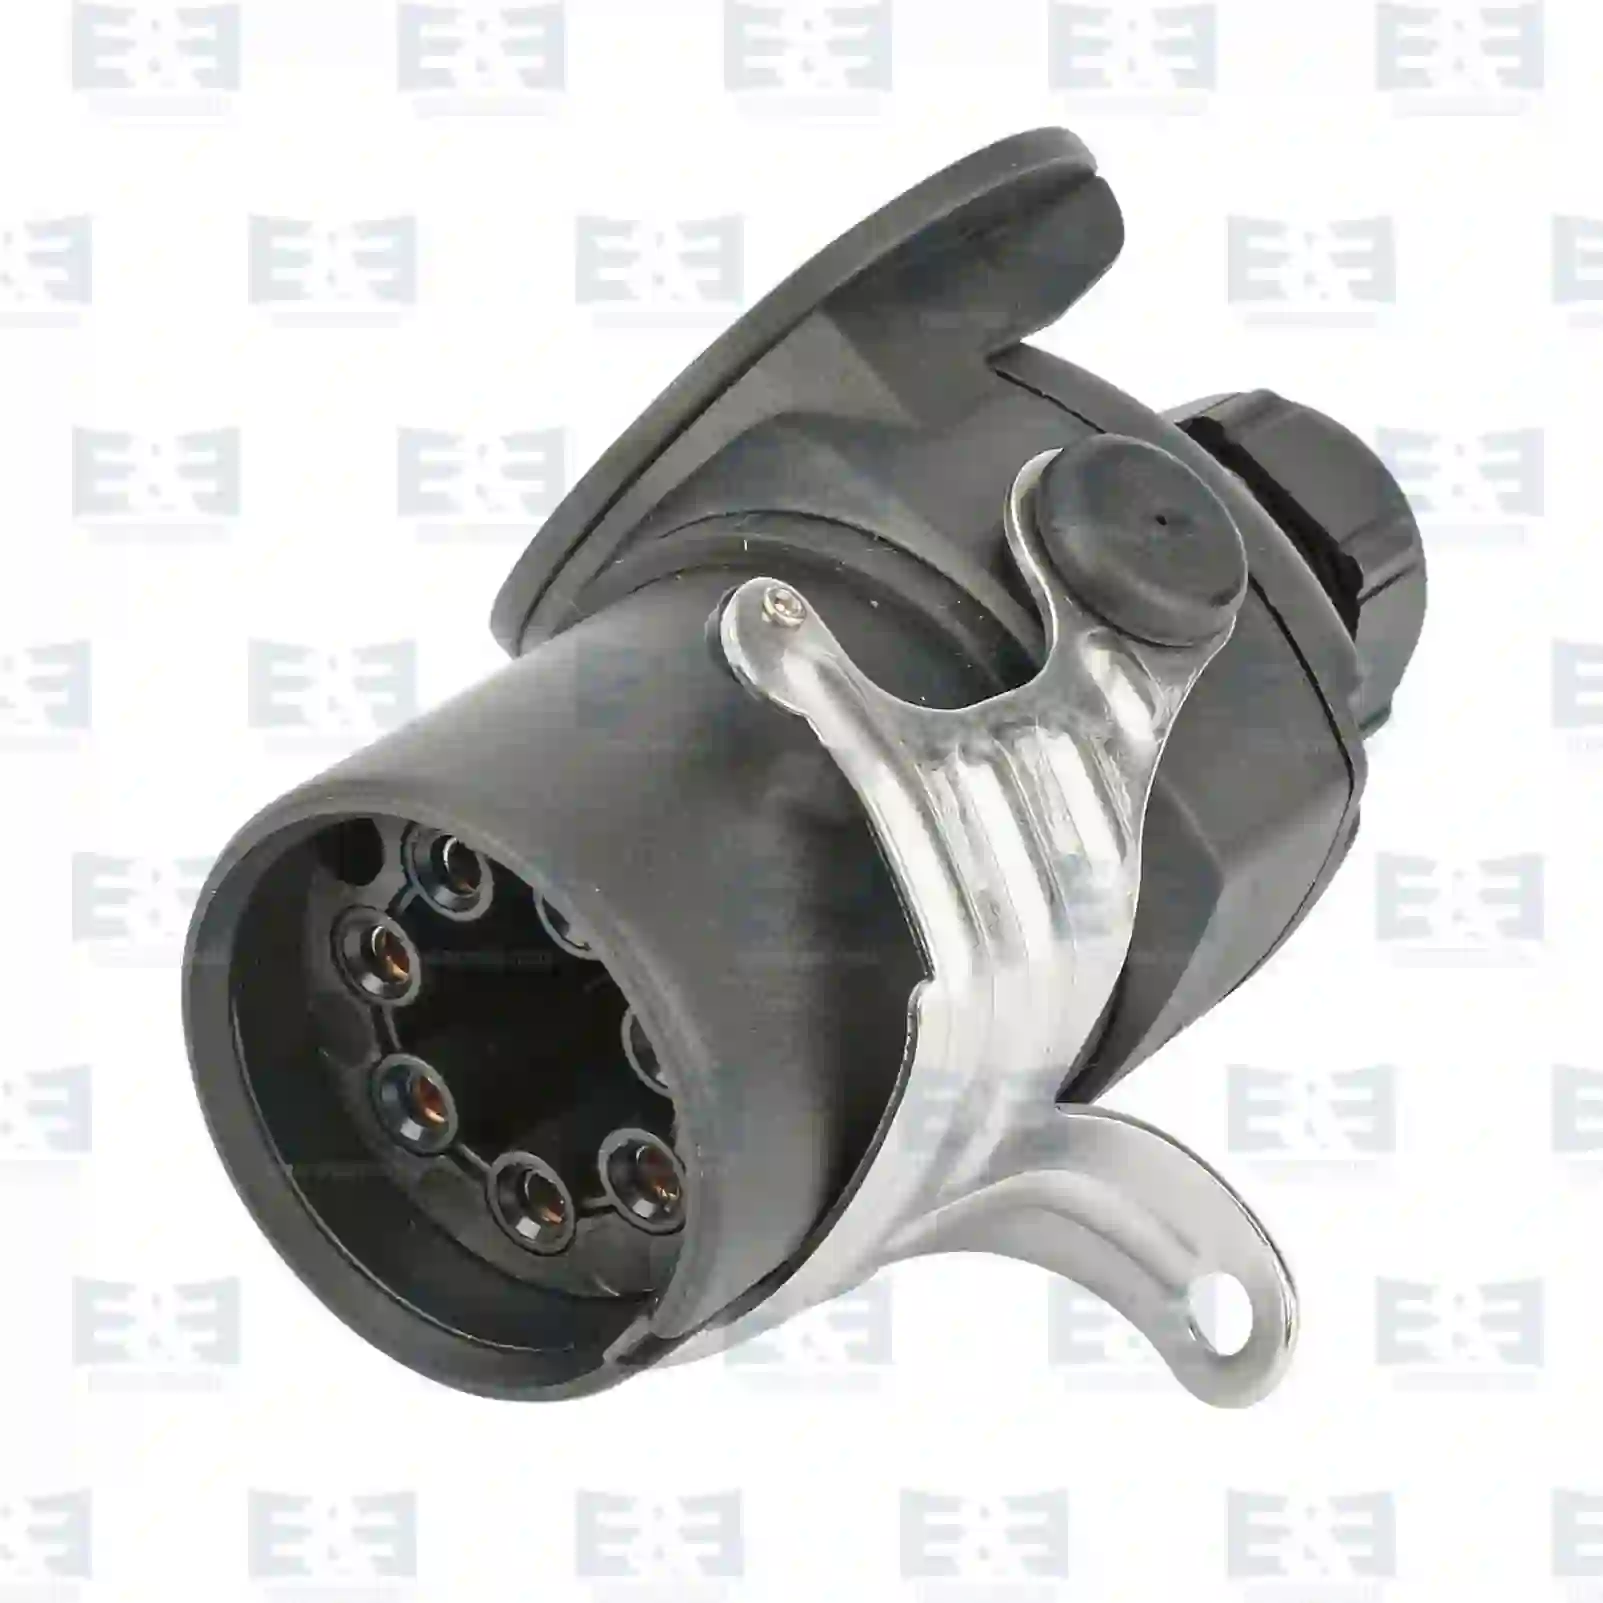  Plug, screw connection || E&E Truck Spare Parts | Truck Spare Parts, Auotomotive Spare Parts